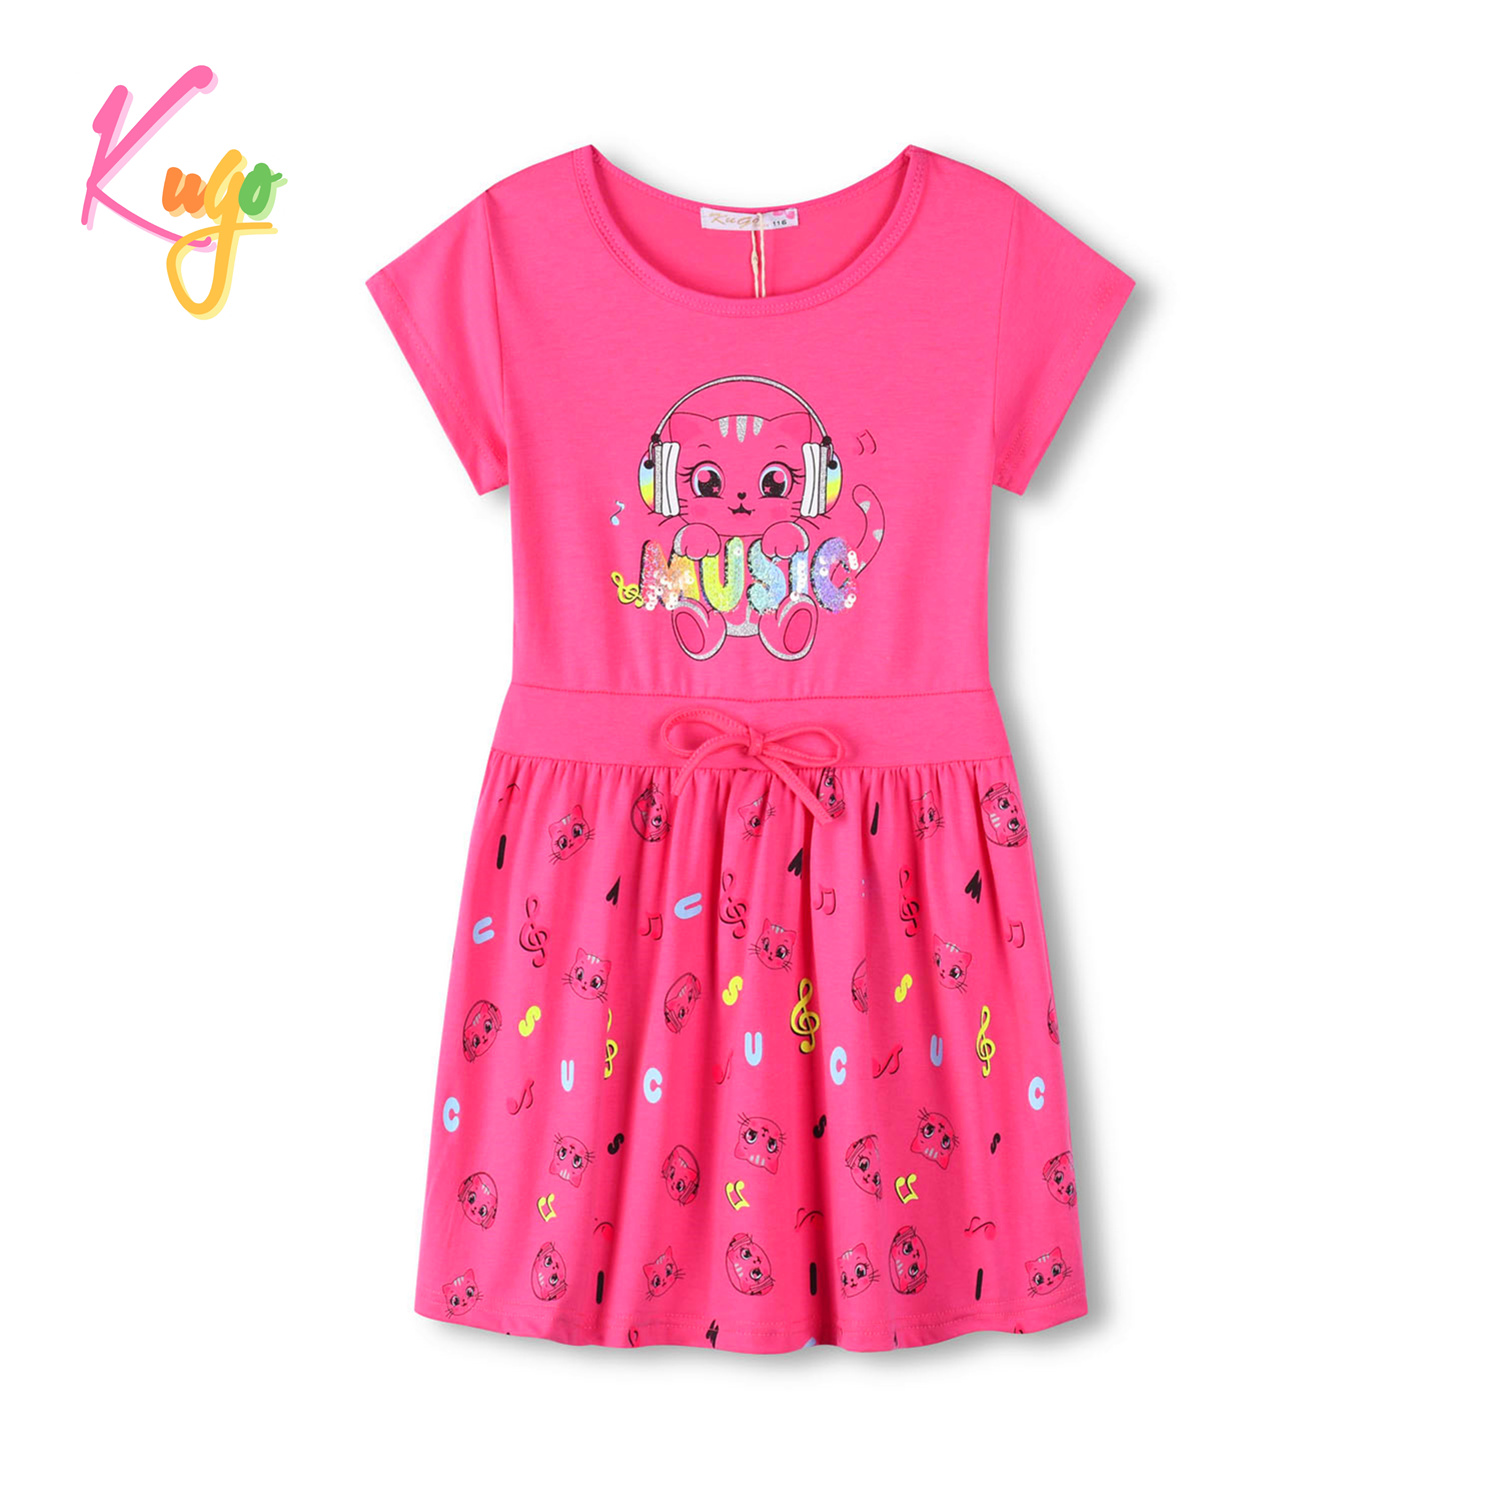 Dívčí šaty - KUGO MS1744, sytě růžová Barva: Růžová, Velikost: 104